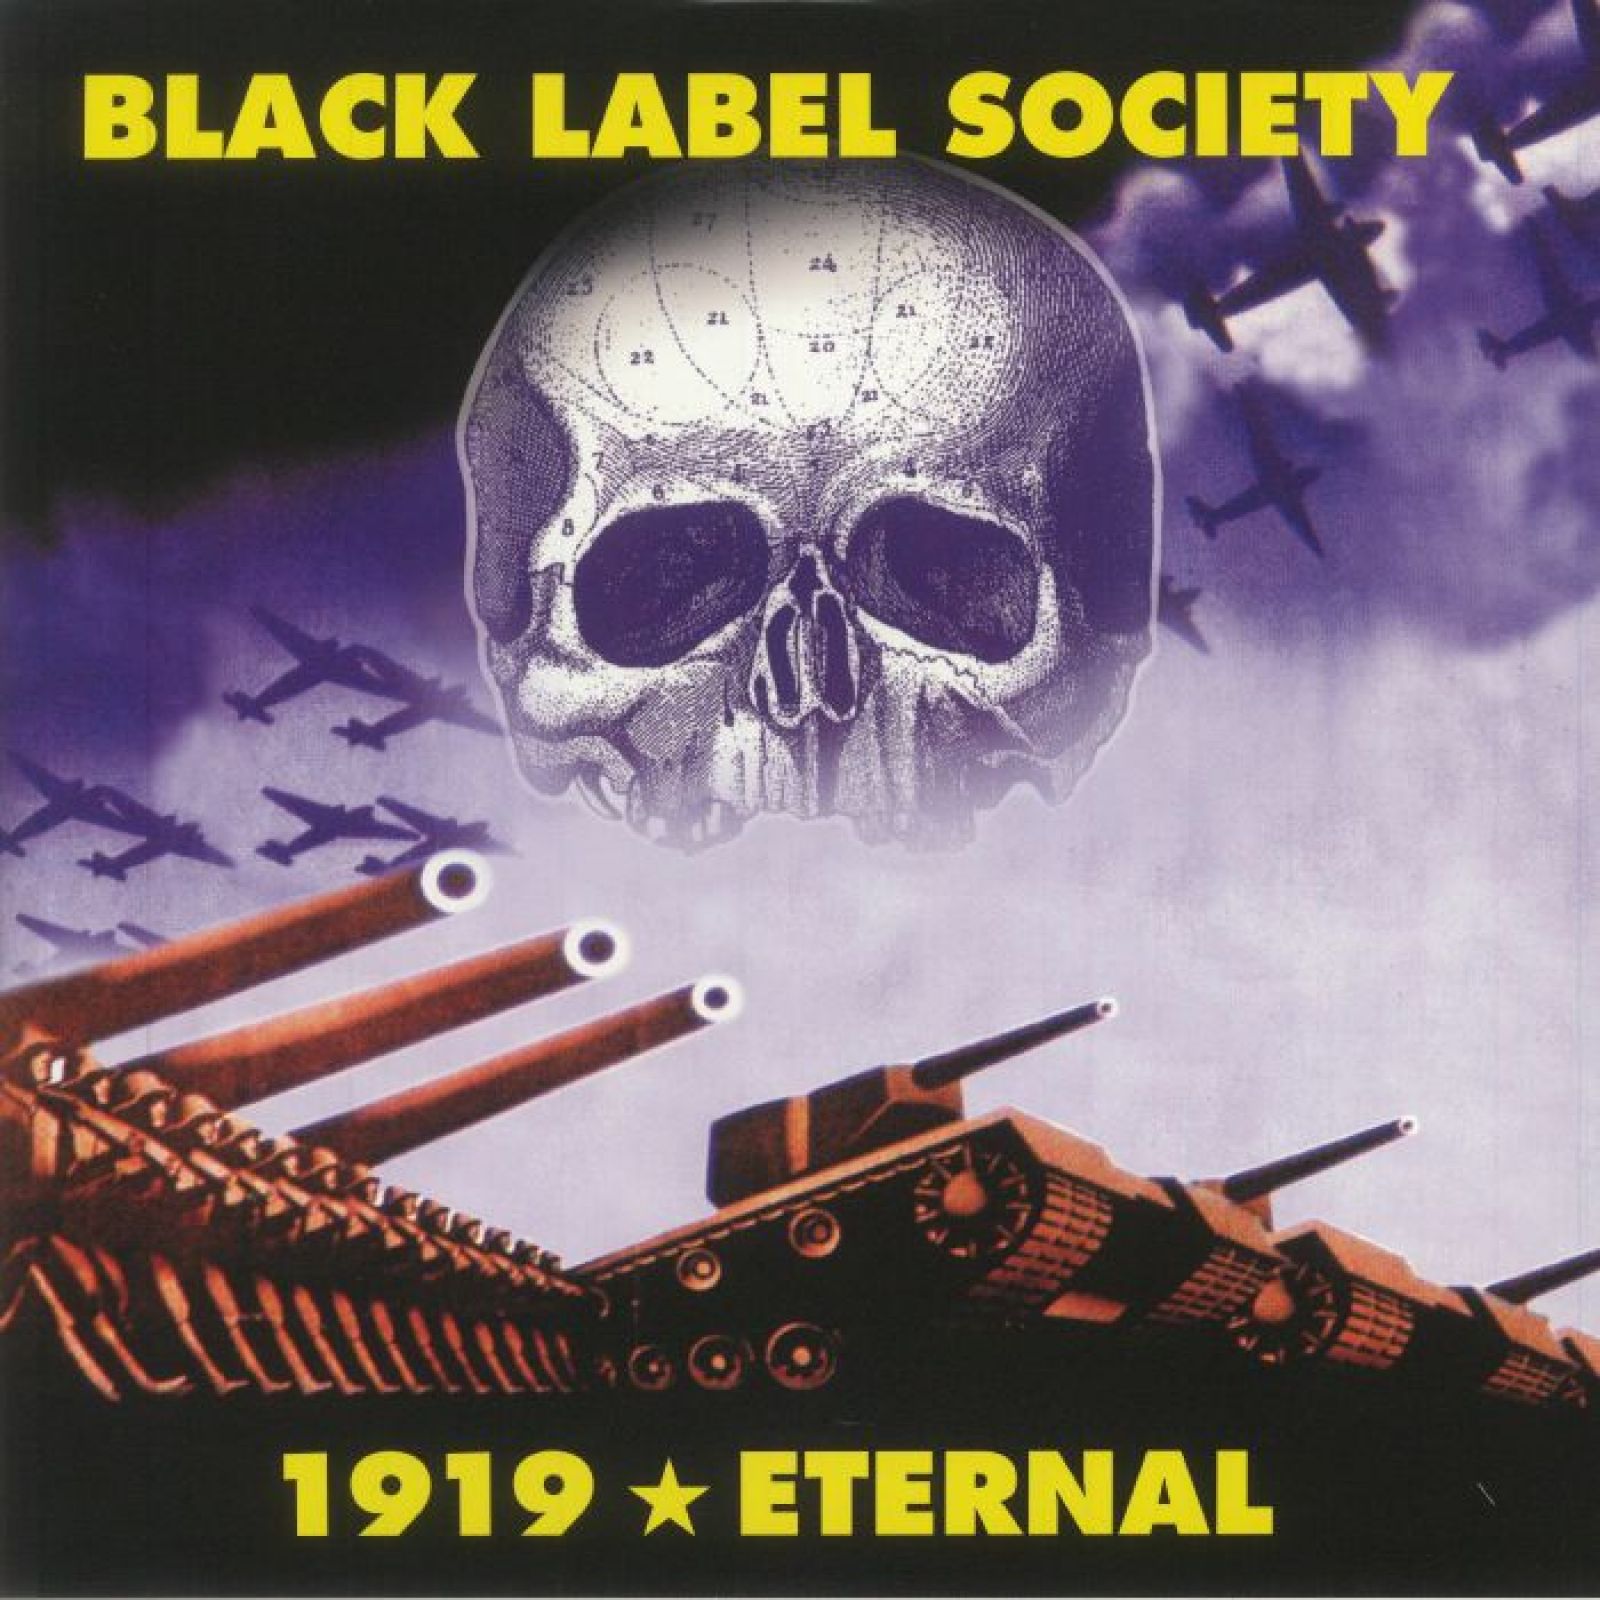 Виниловая пластинка Black Label Society, 1919 Eternal (coloured) (0634164655617) виниловая пластинка black label society 1919 eternal coloured 0634164655617